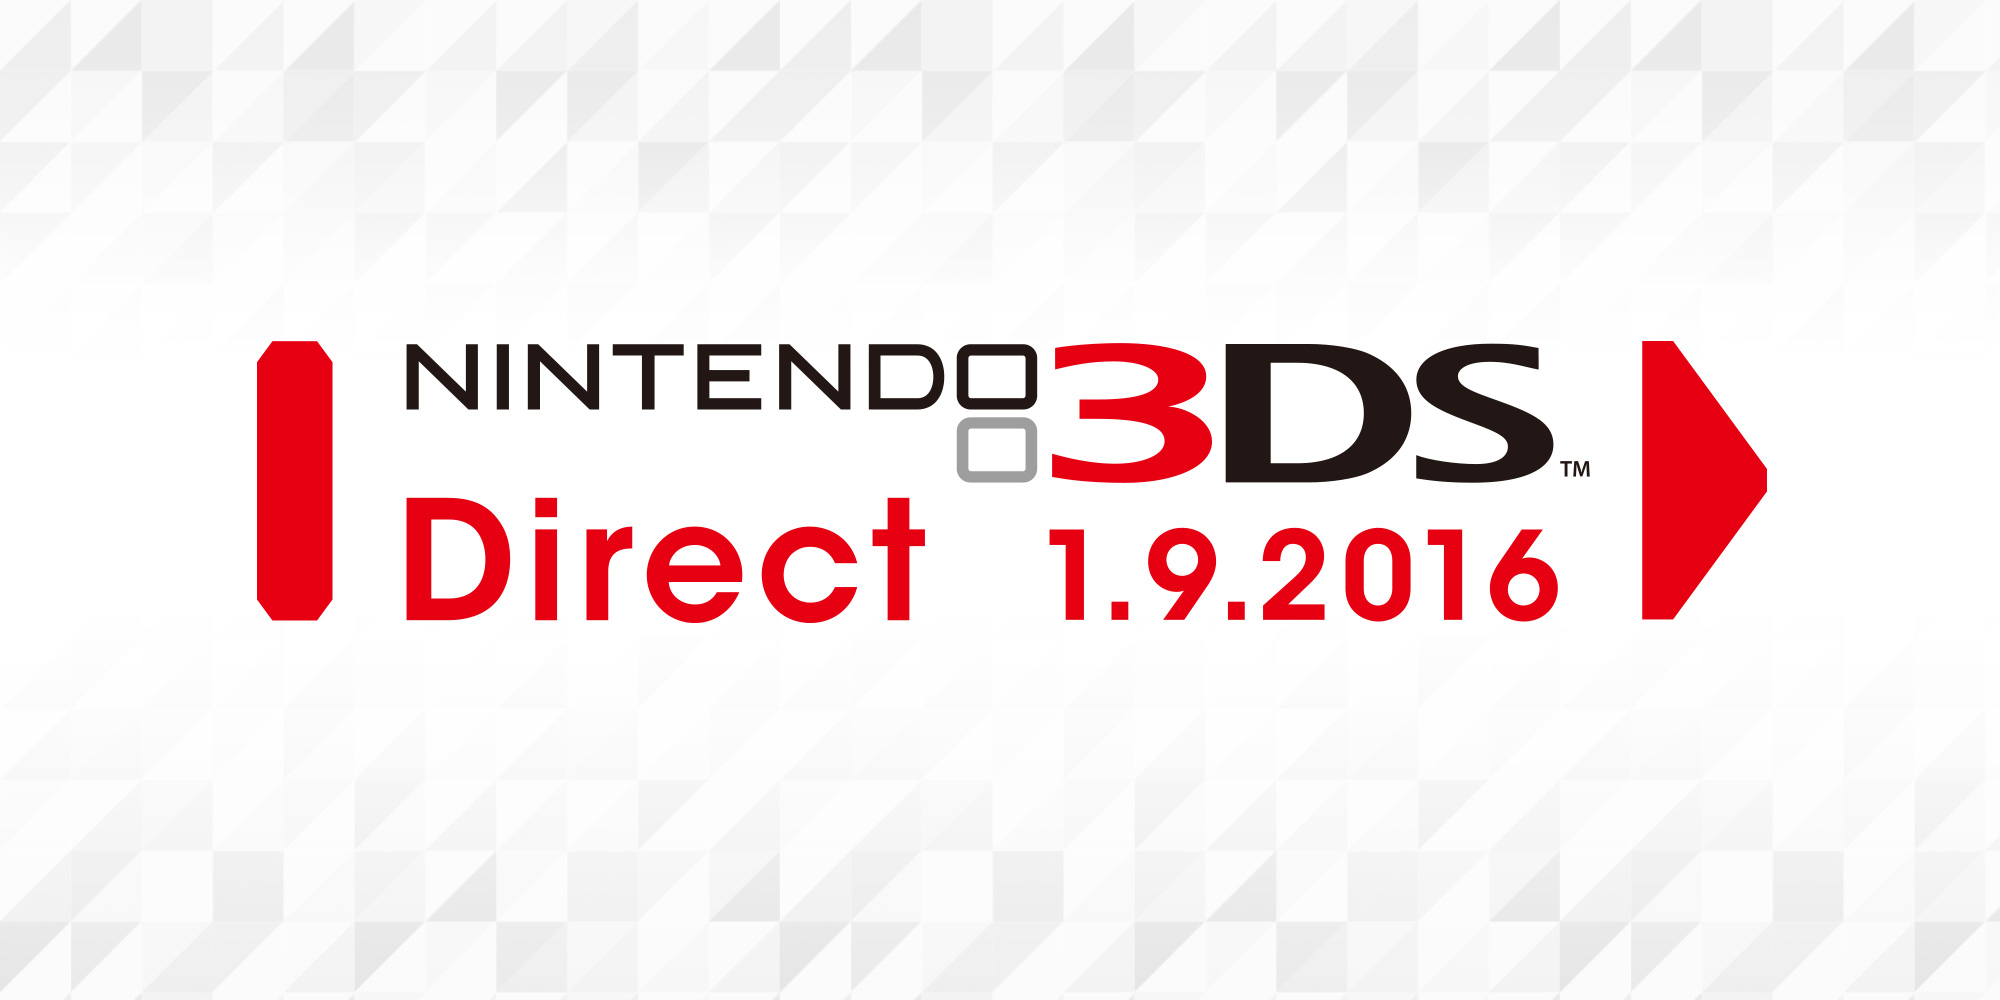 Nova Nintendo Direct trouxe novidades relativas à Nintendo 3DS